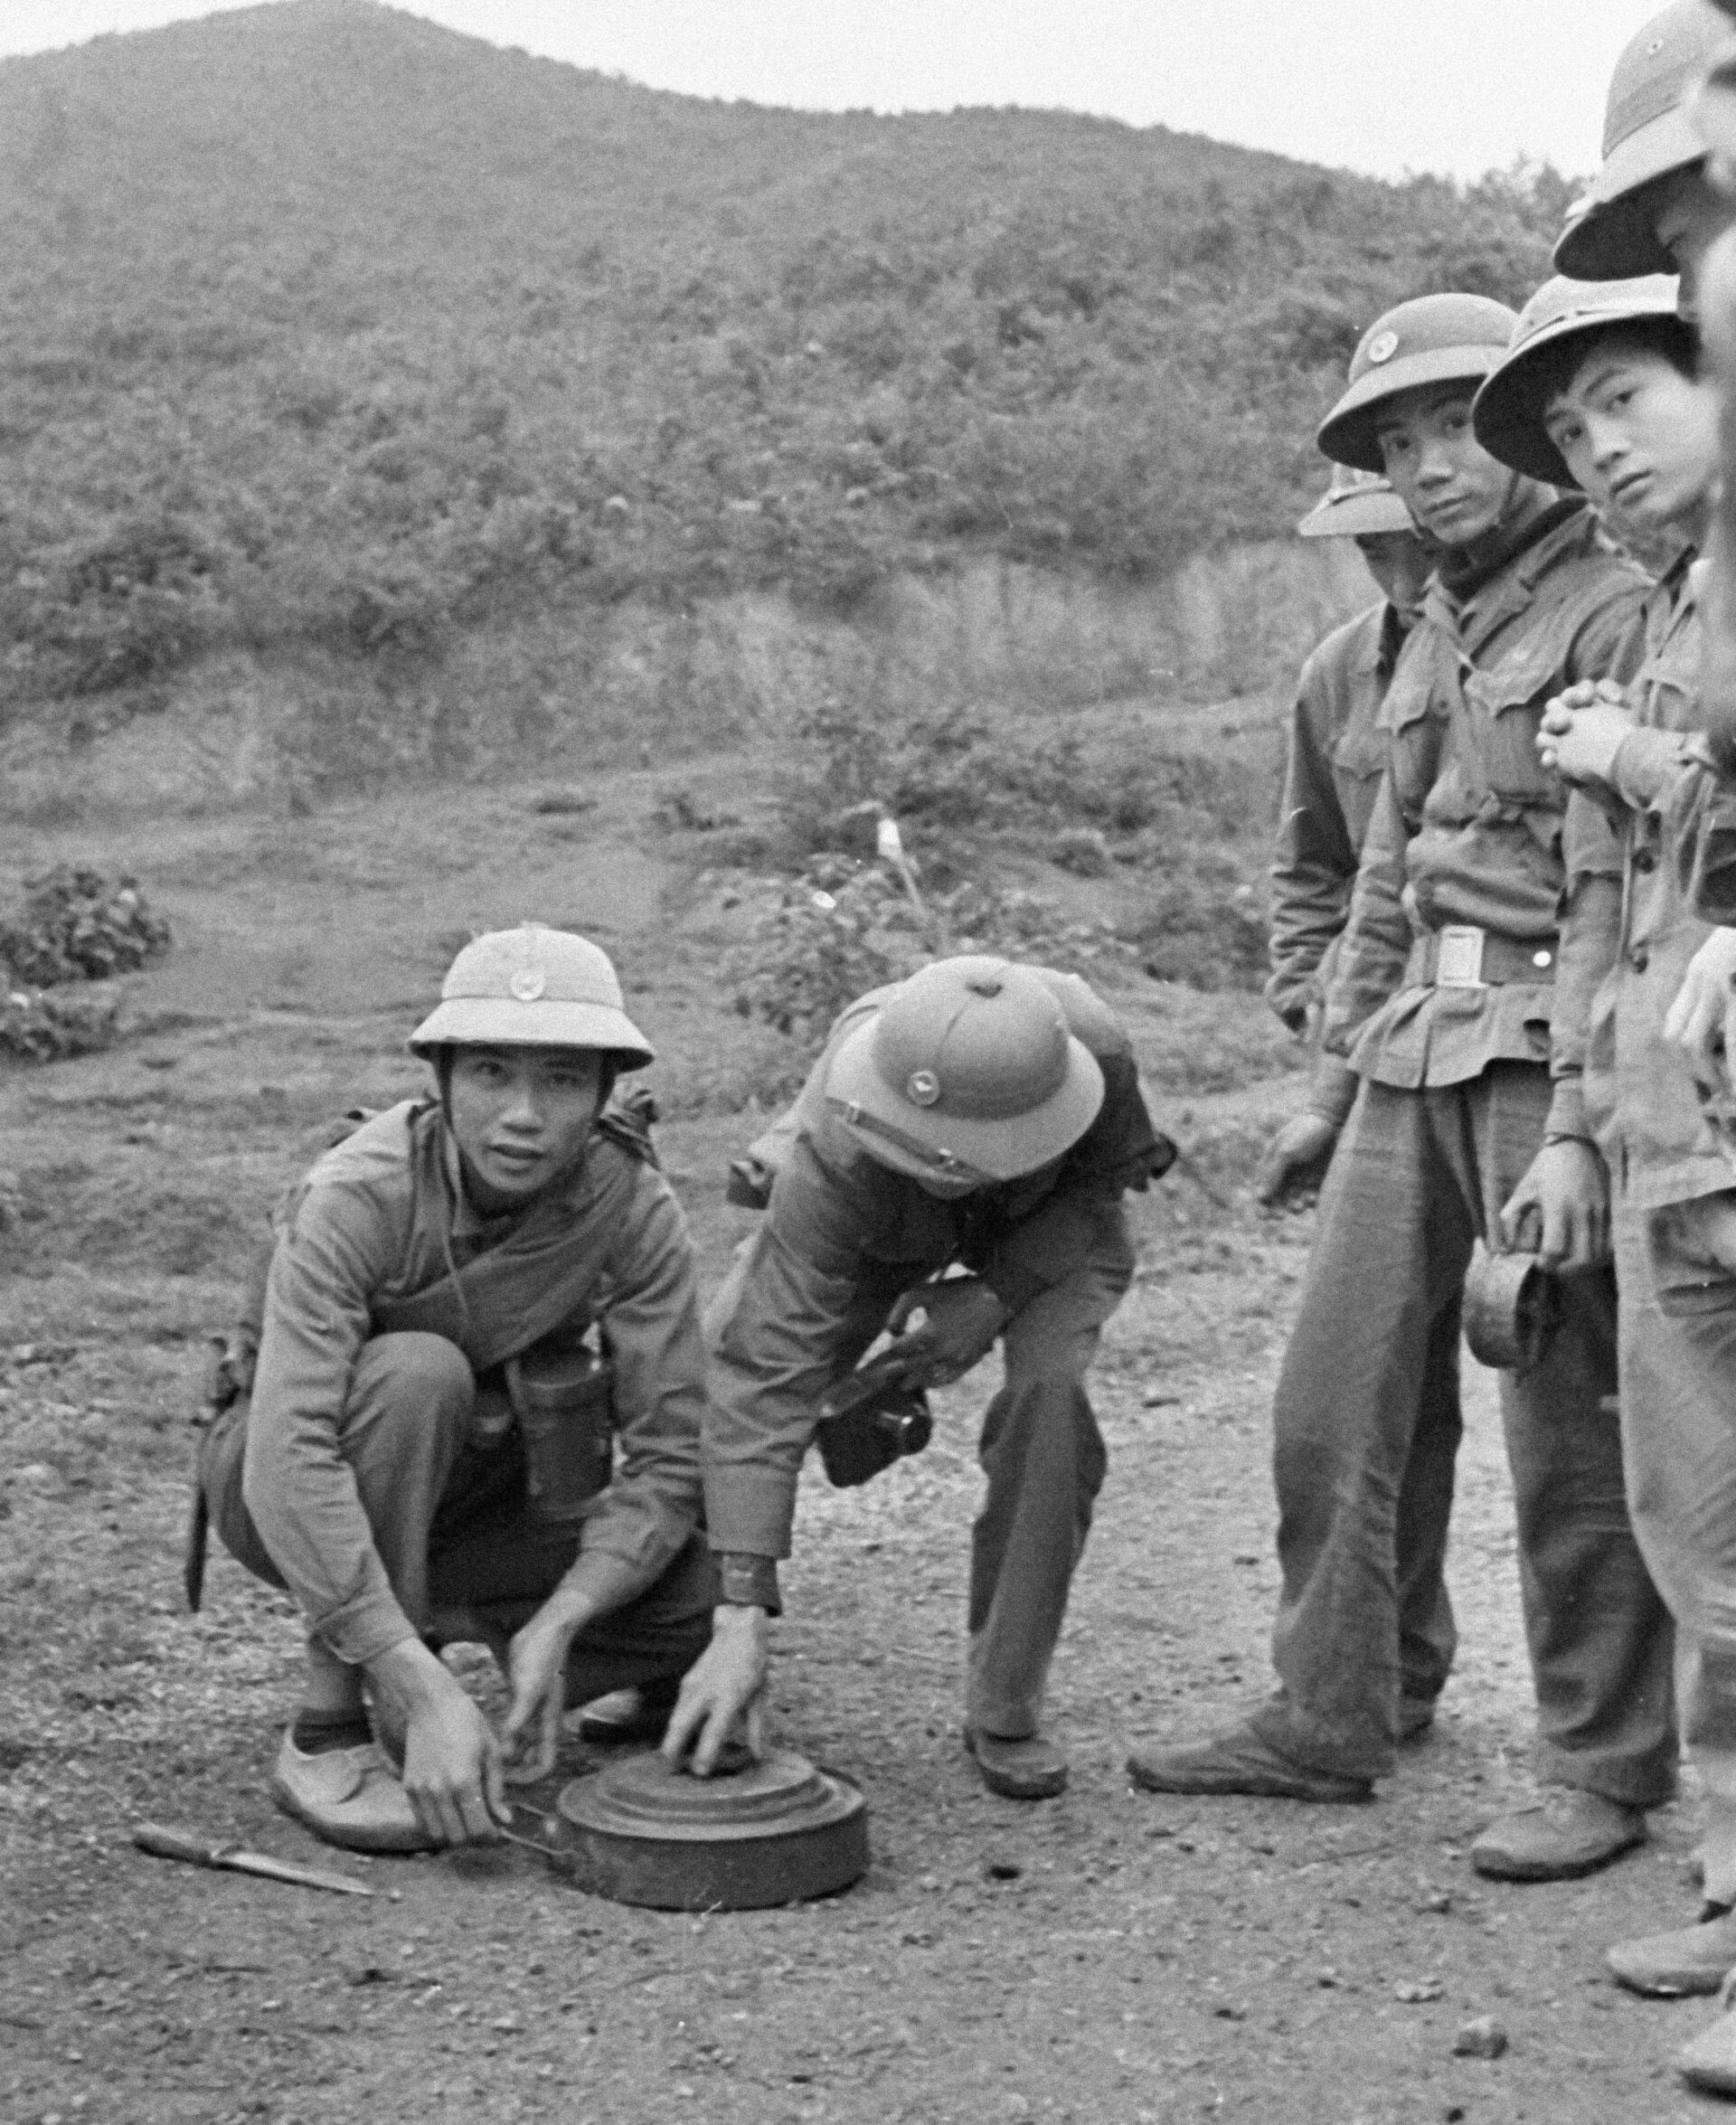 “Bóp chết” Việt Nam, nỗi nhục của Trung Quốc và sức mạnh vô địch Quân đội Hồ Chí Minh - Sputnik Việt Nam, 1920, 17.02.2021